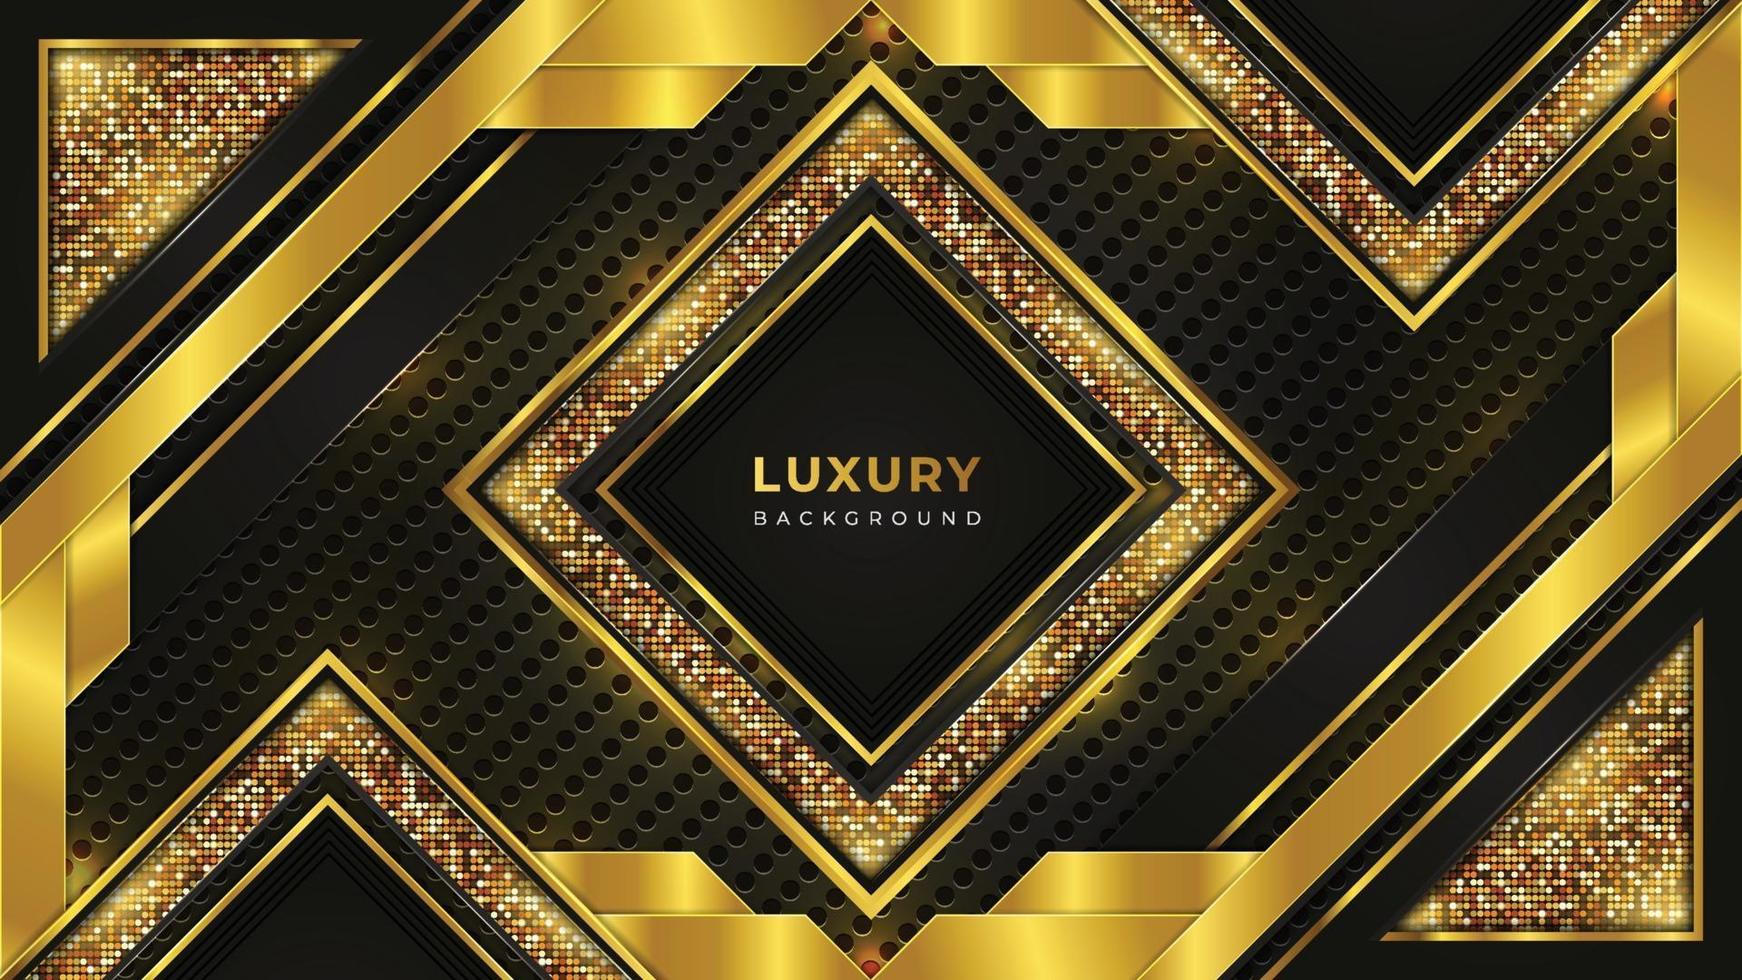 goldene Luxus-Hintergrundschablone mit goldenem Muster vektor